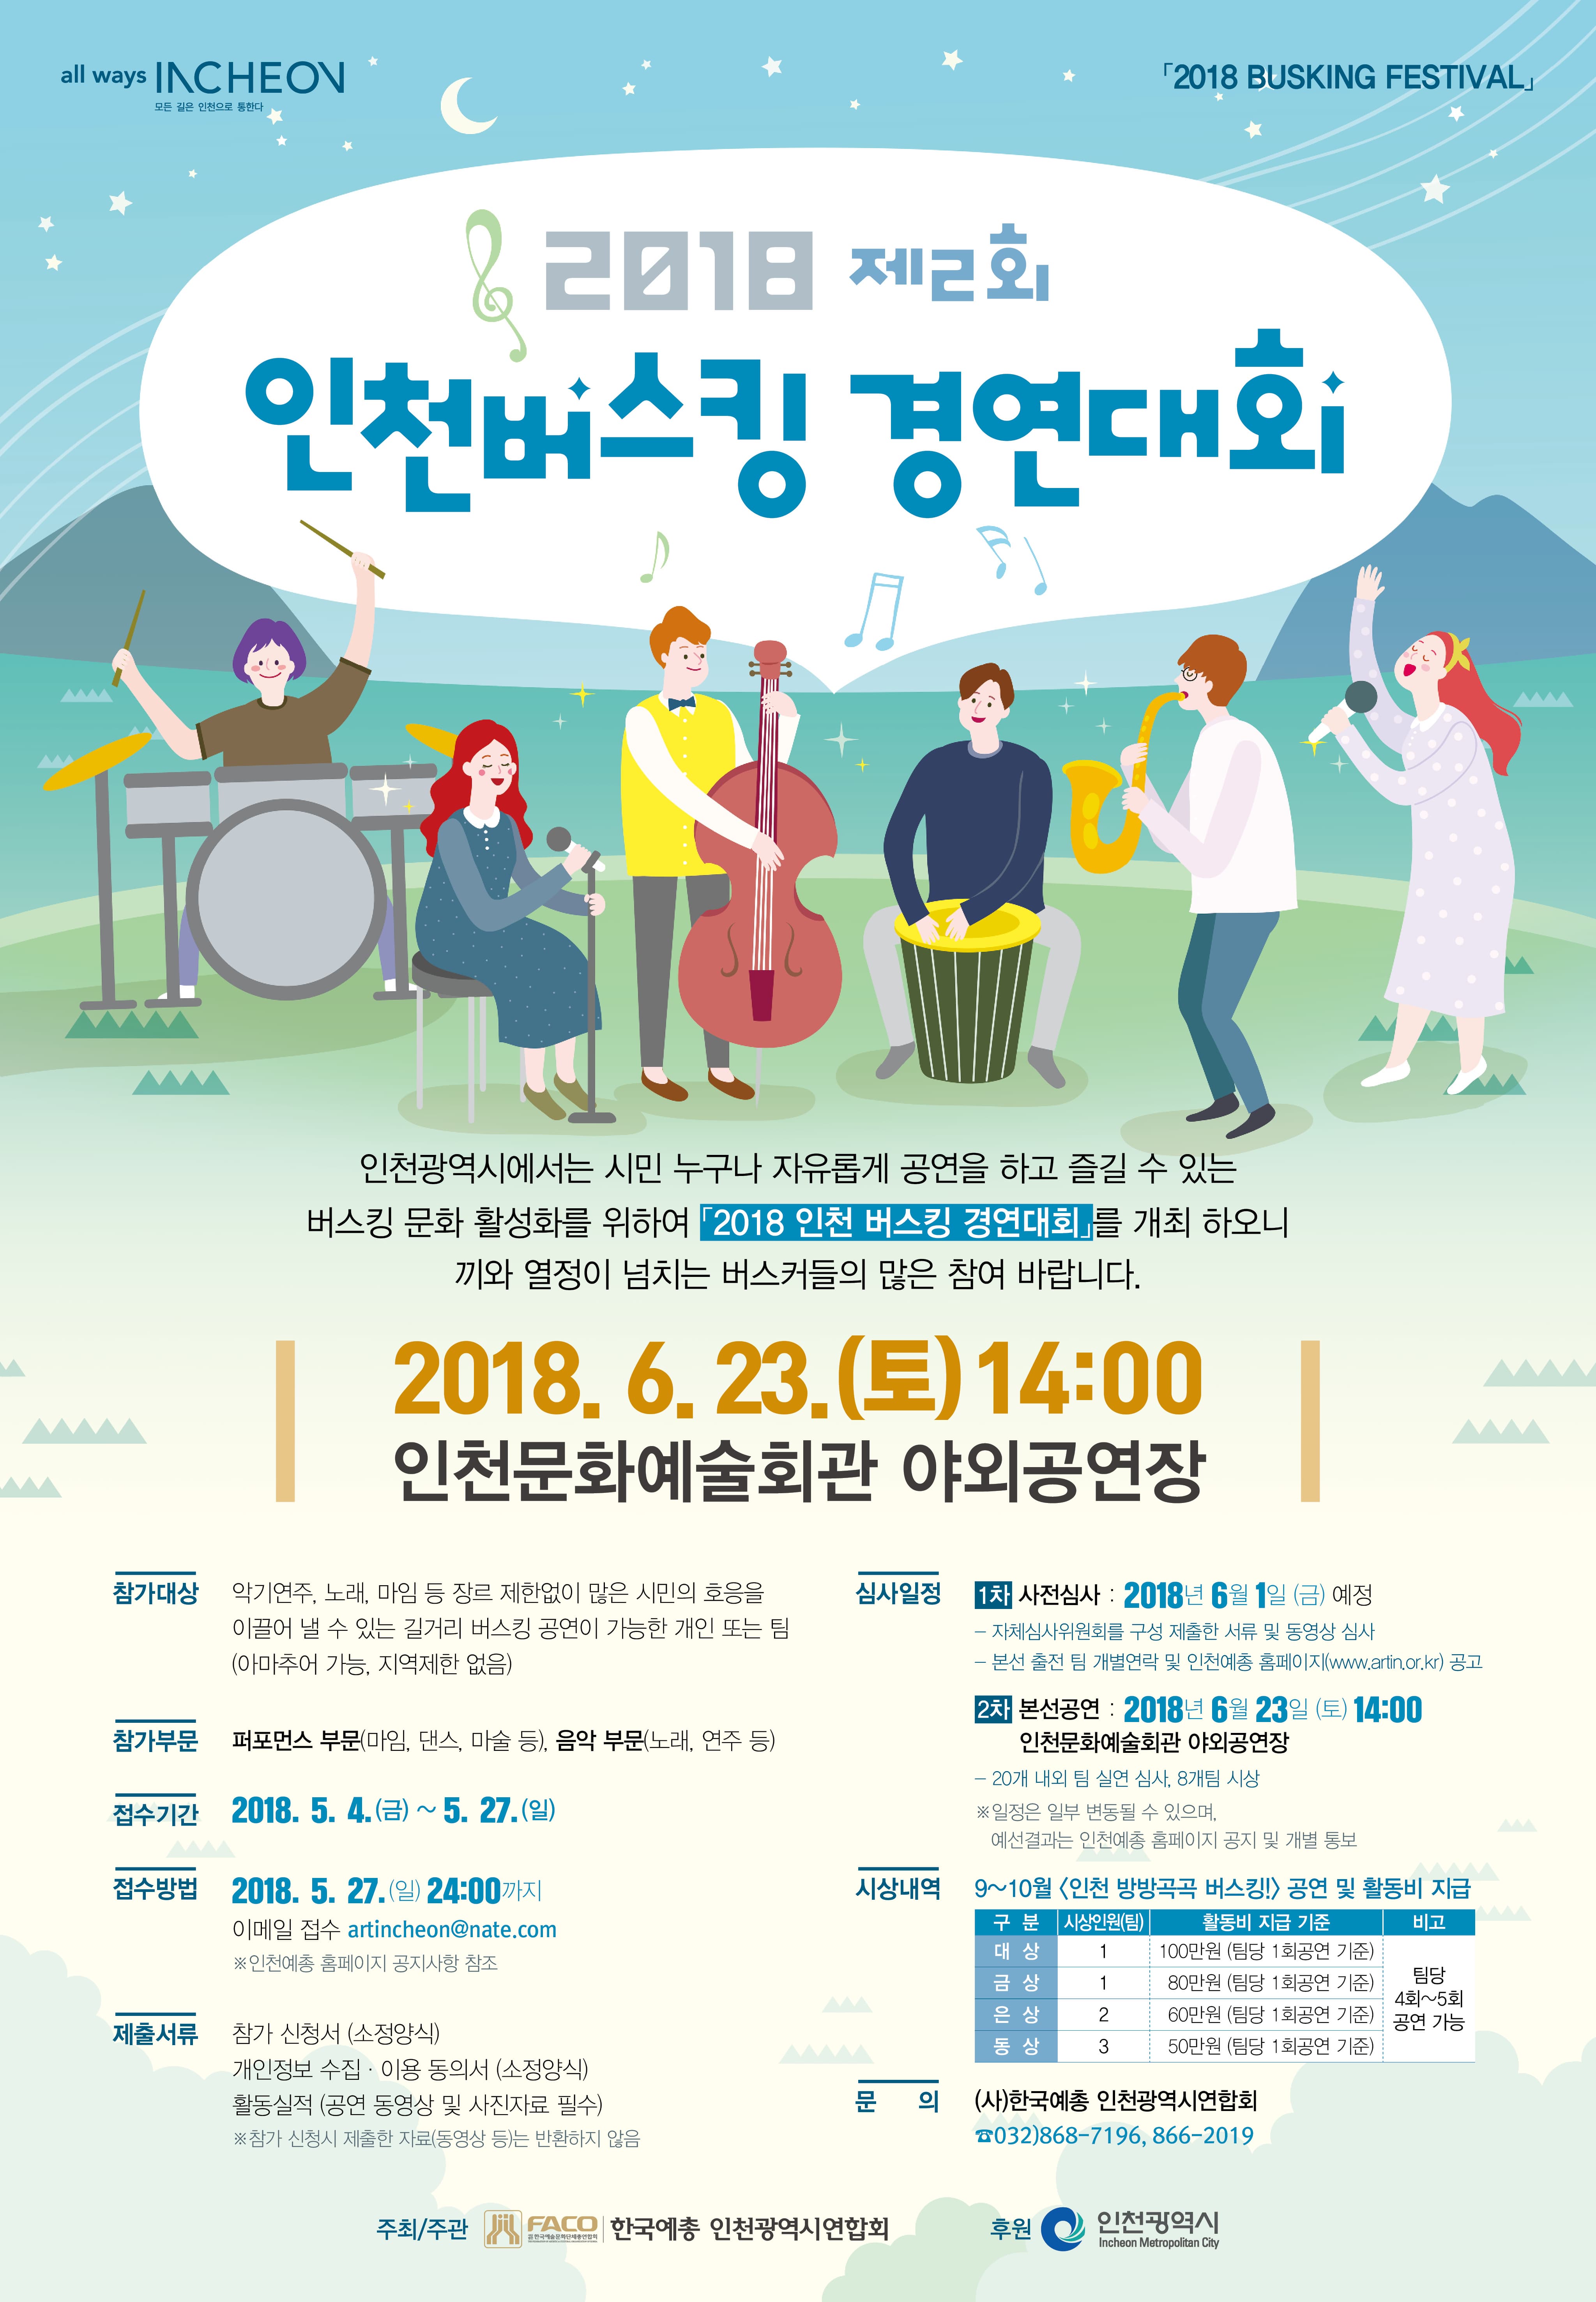 2018 제2회 인천버스킹 경연대회 본문 내용 참조